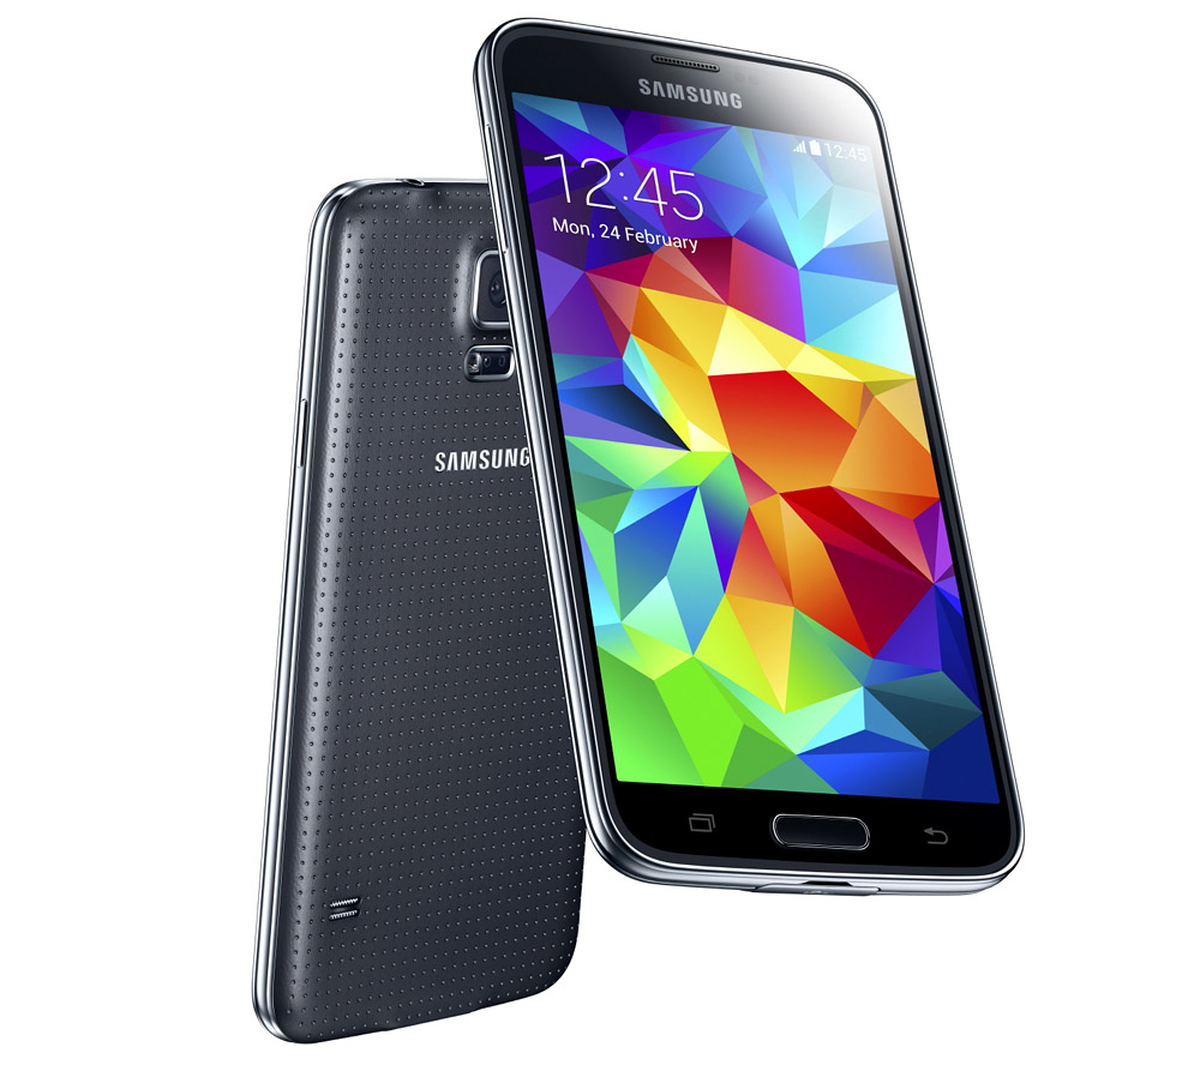 Samsung Galaxy S5 : Caratteristiche e Opinioni | JuzaPhoto